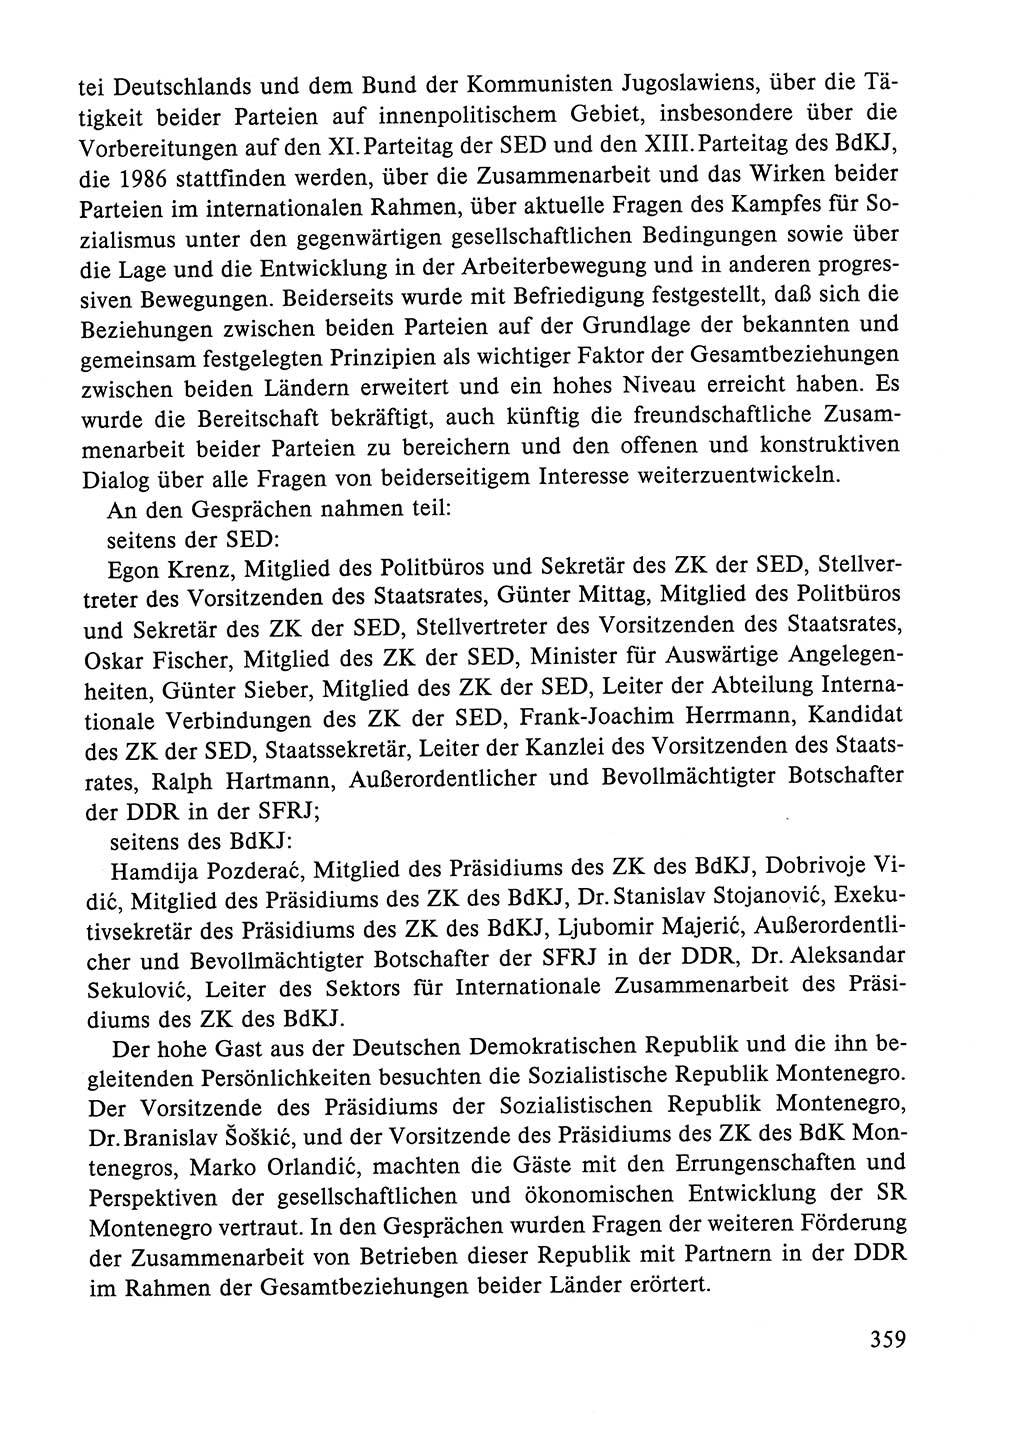 Dokumente der Sozialistischen Einheitspartei Deutschlands (SED) [Deutsche Demokratische Republik (DDR)] 1984-1985, Seite 359 (Dok. SED DDR 1984-1985, S. 359)